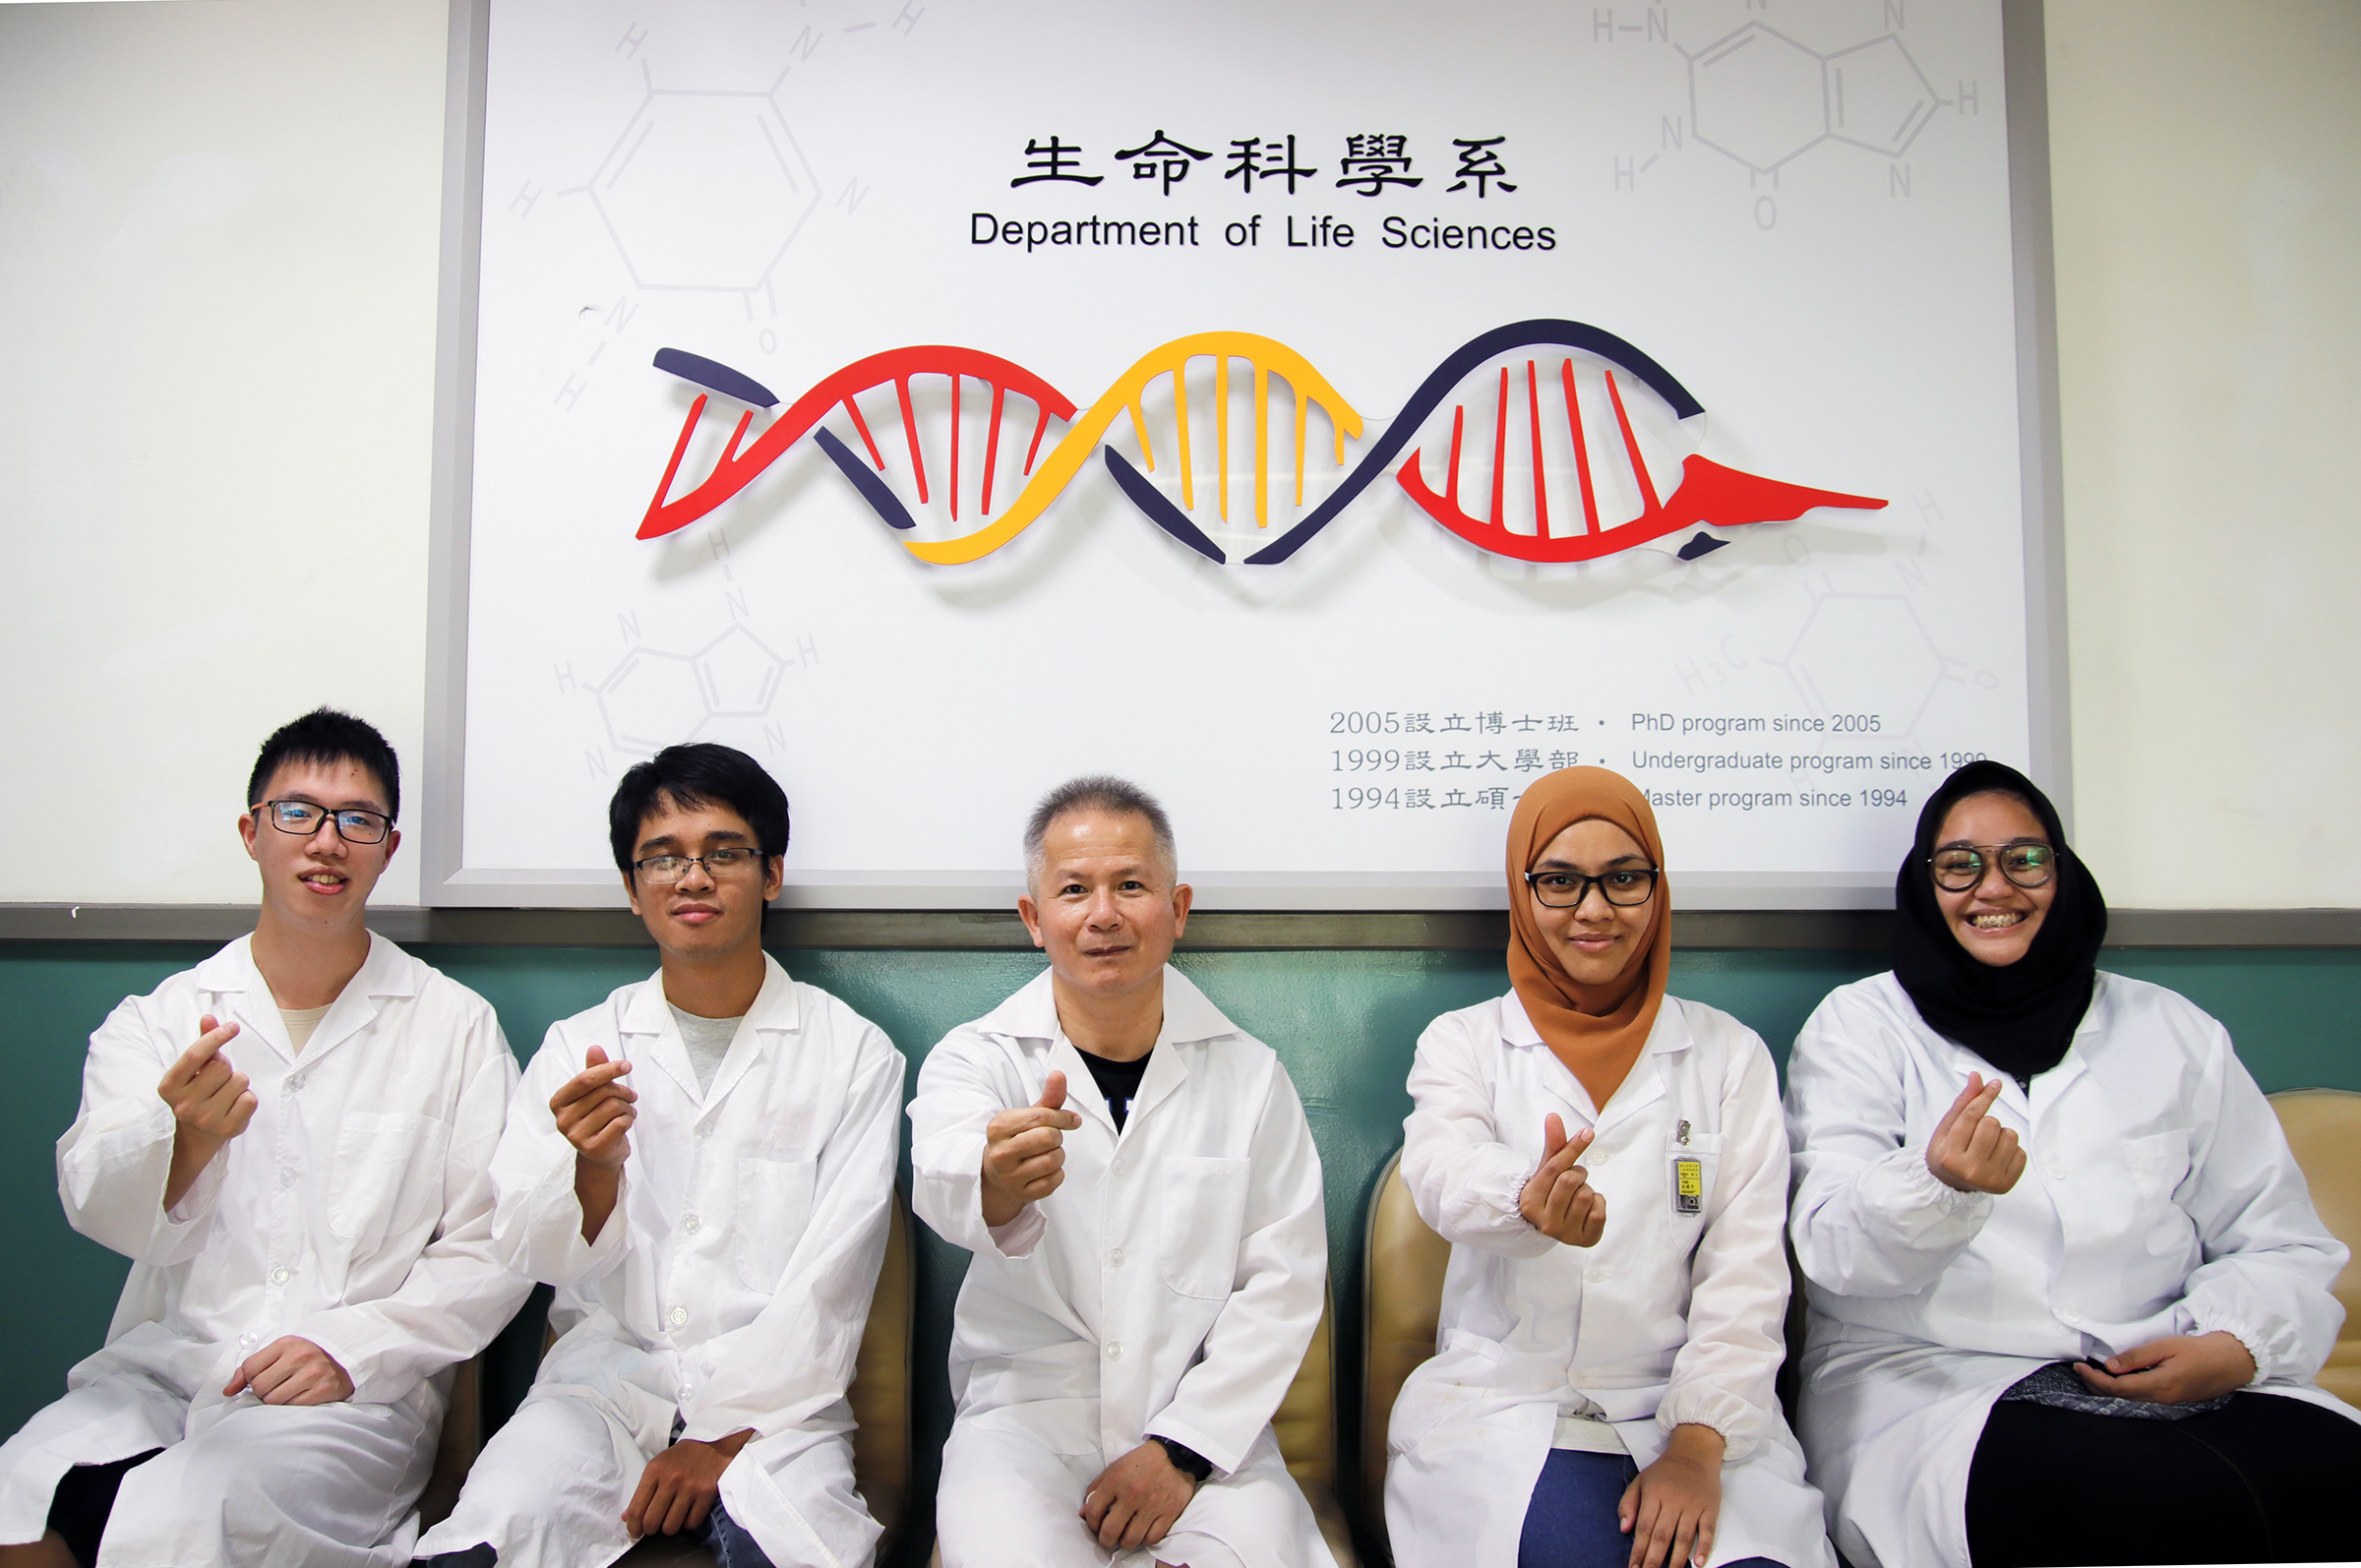 中央大學生命科學系王健家教授(中) 團隊提供新證據，有助於解開小腦萎縮症的致病機制，成果刊登於國際頂尖期刊《核酸研究》。陳如枝攝